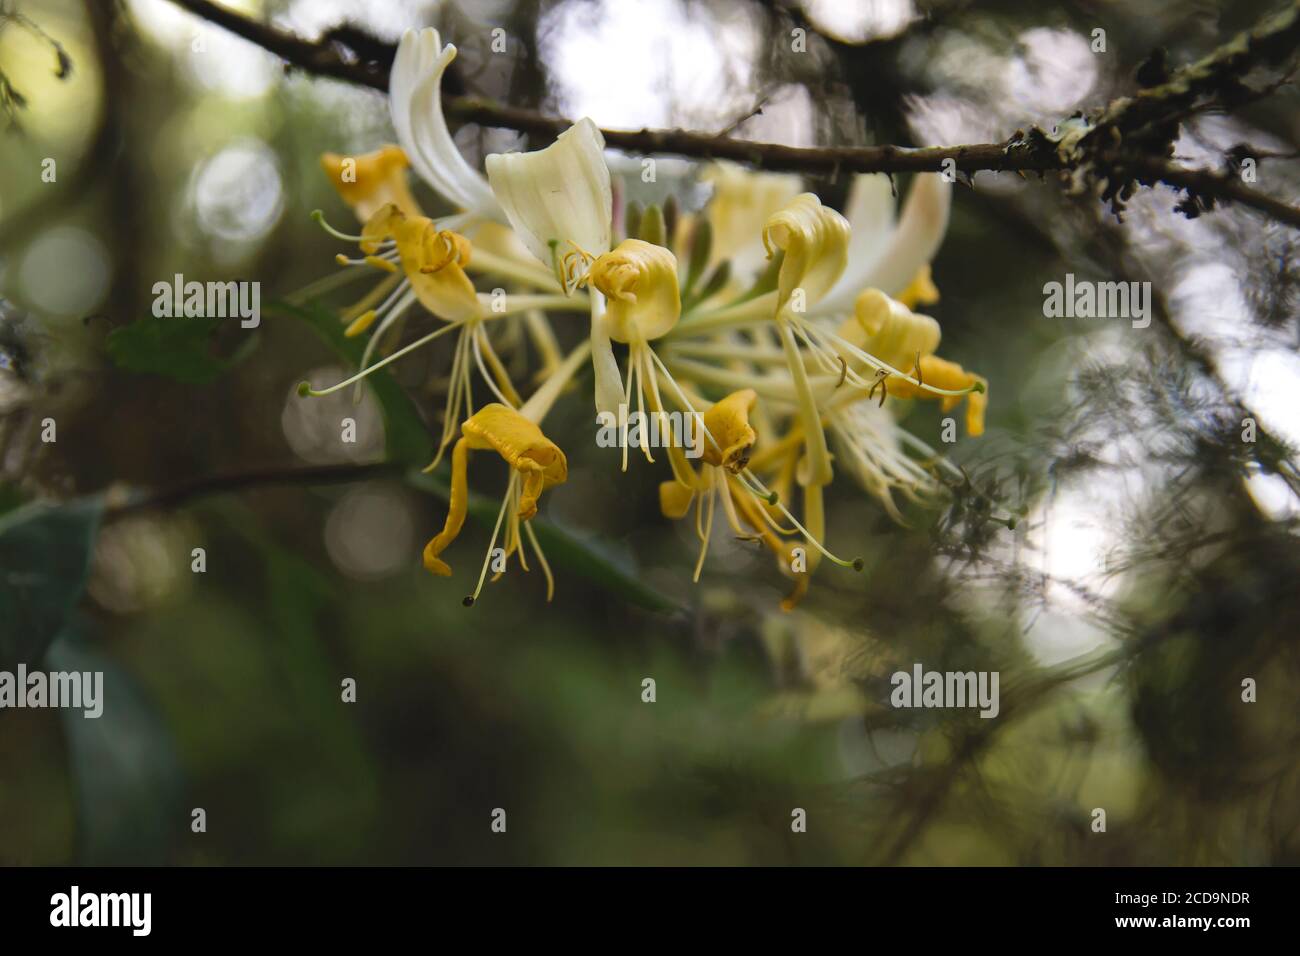 Detail of wild honeysuckle yellow flowers blooming Stock Photo